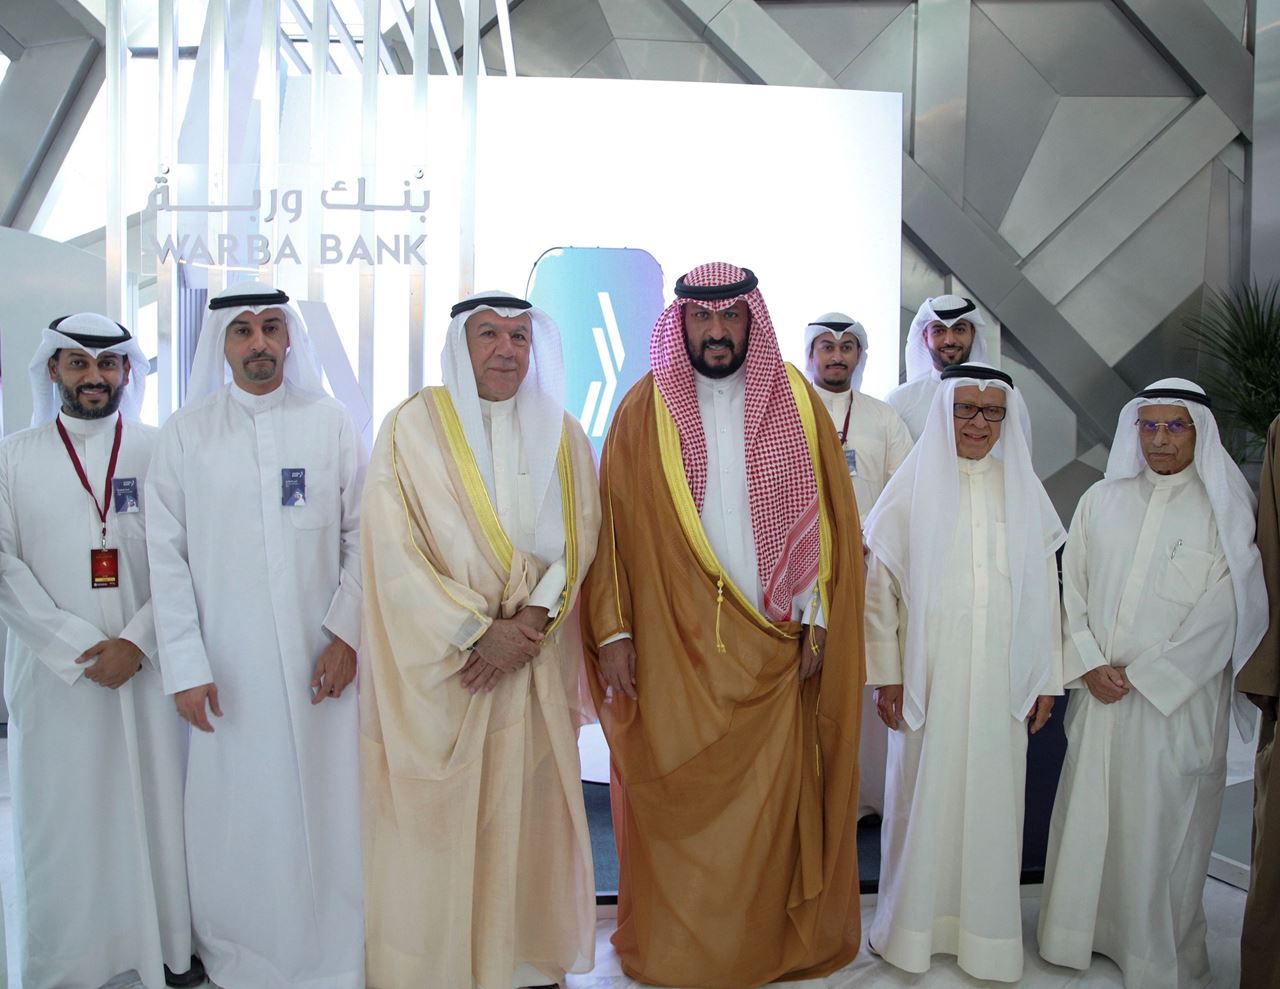 بنك وربة الشريك الاستراتيجي لجائزة الكويت "للعلاقات العامة وخدمة العملاء"